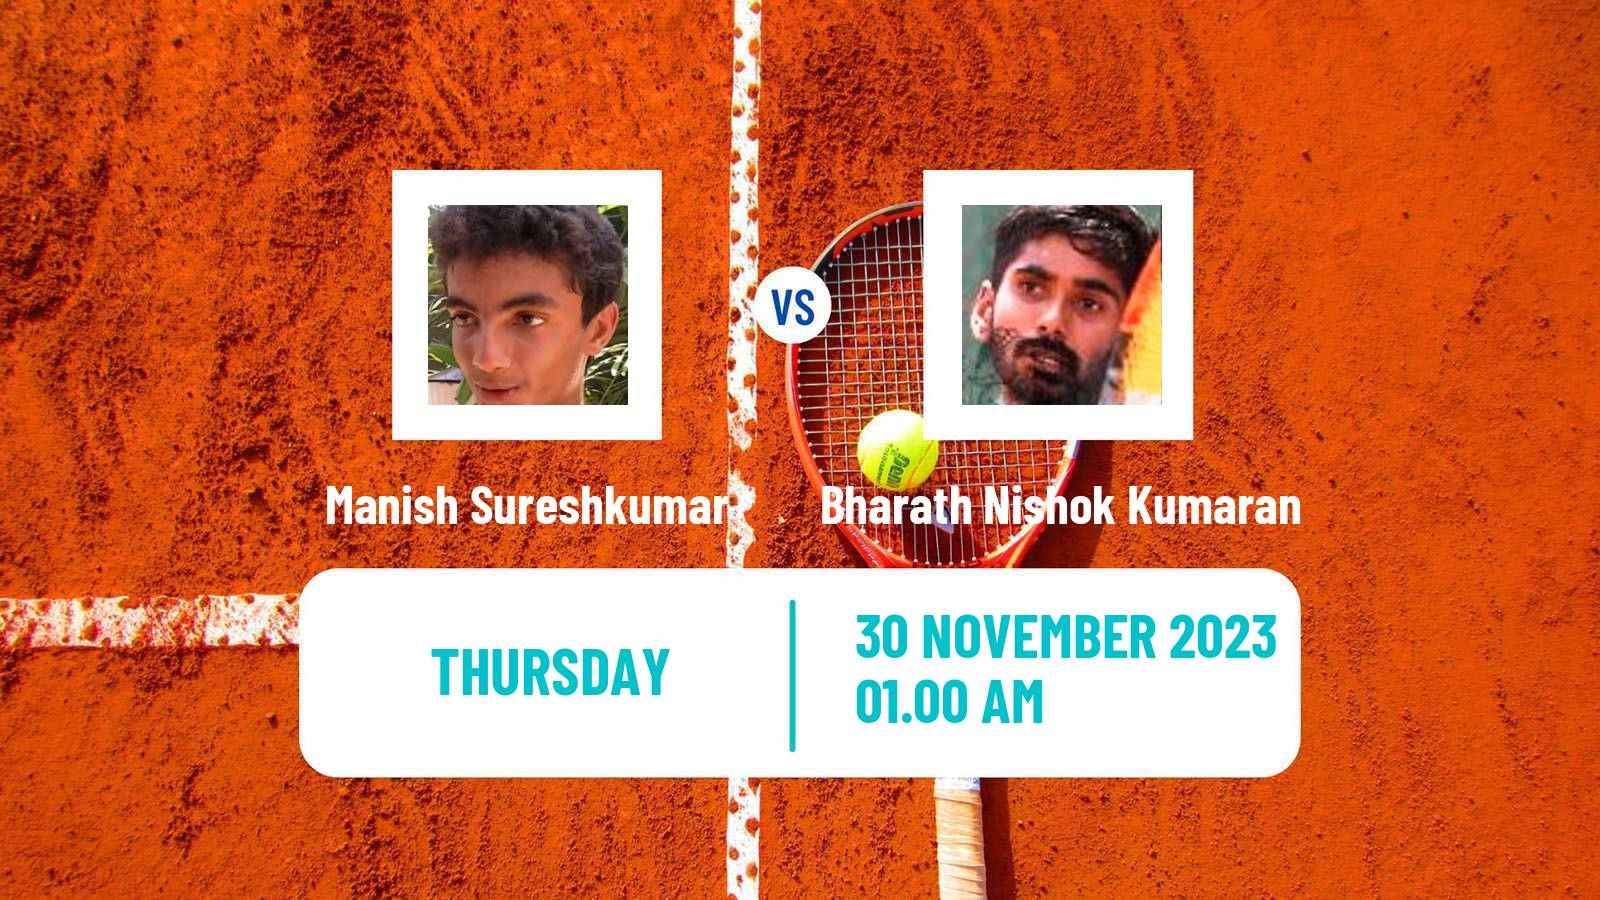 Tennis ITF M25 Kalaburagi Men Manish Sureshkumar - Bharath Nishok Kumaran